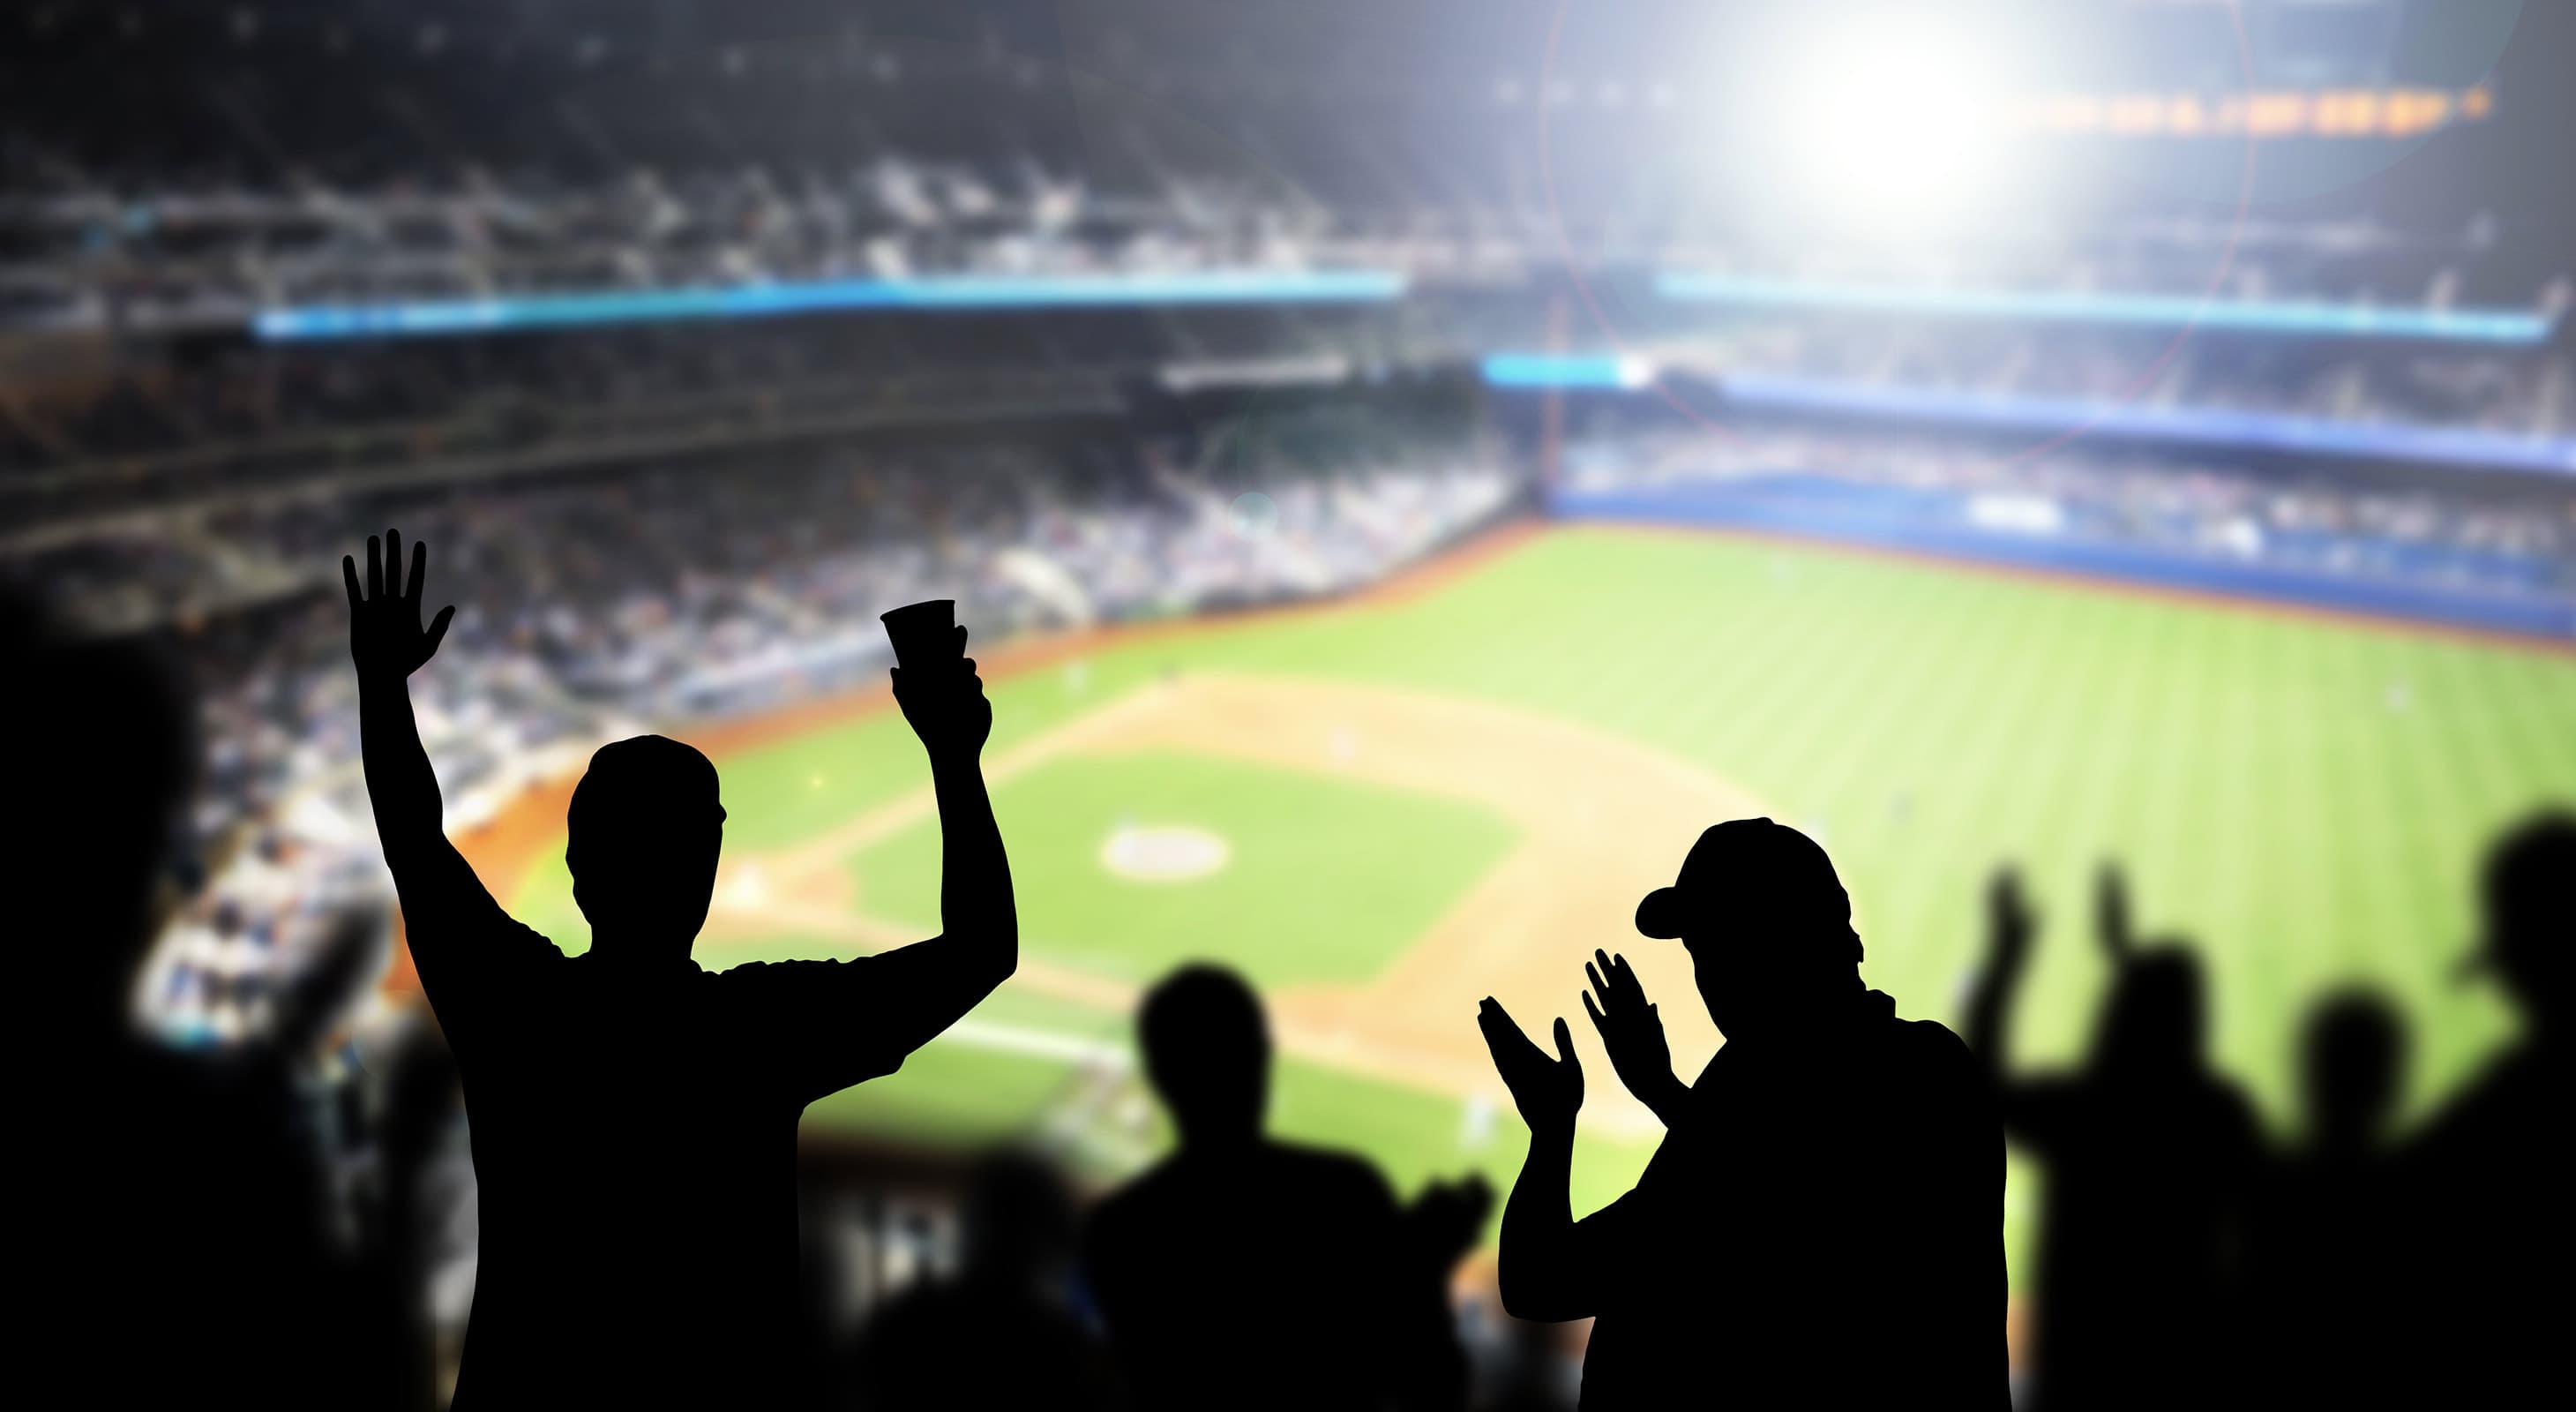 fans cheering at a baseball stadium